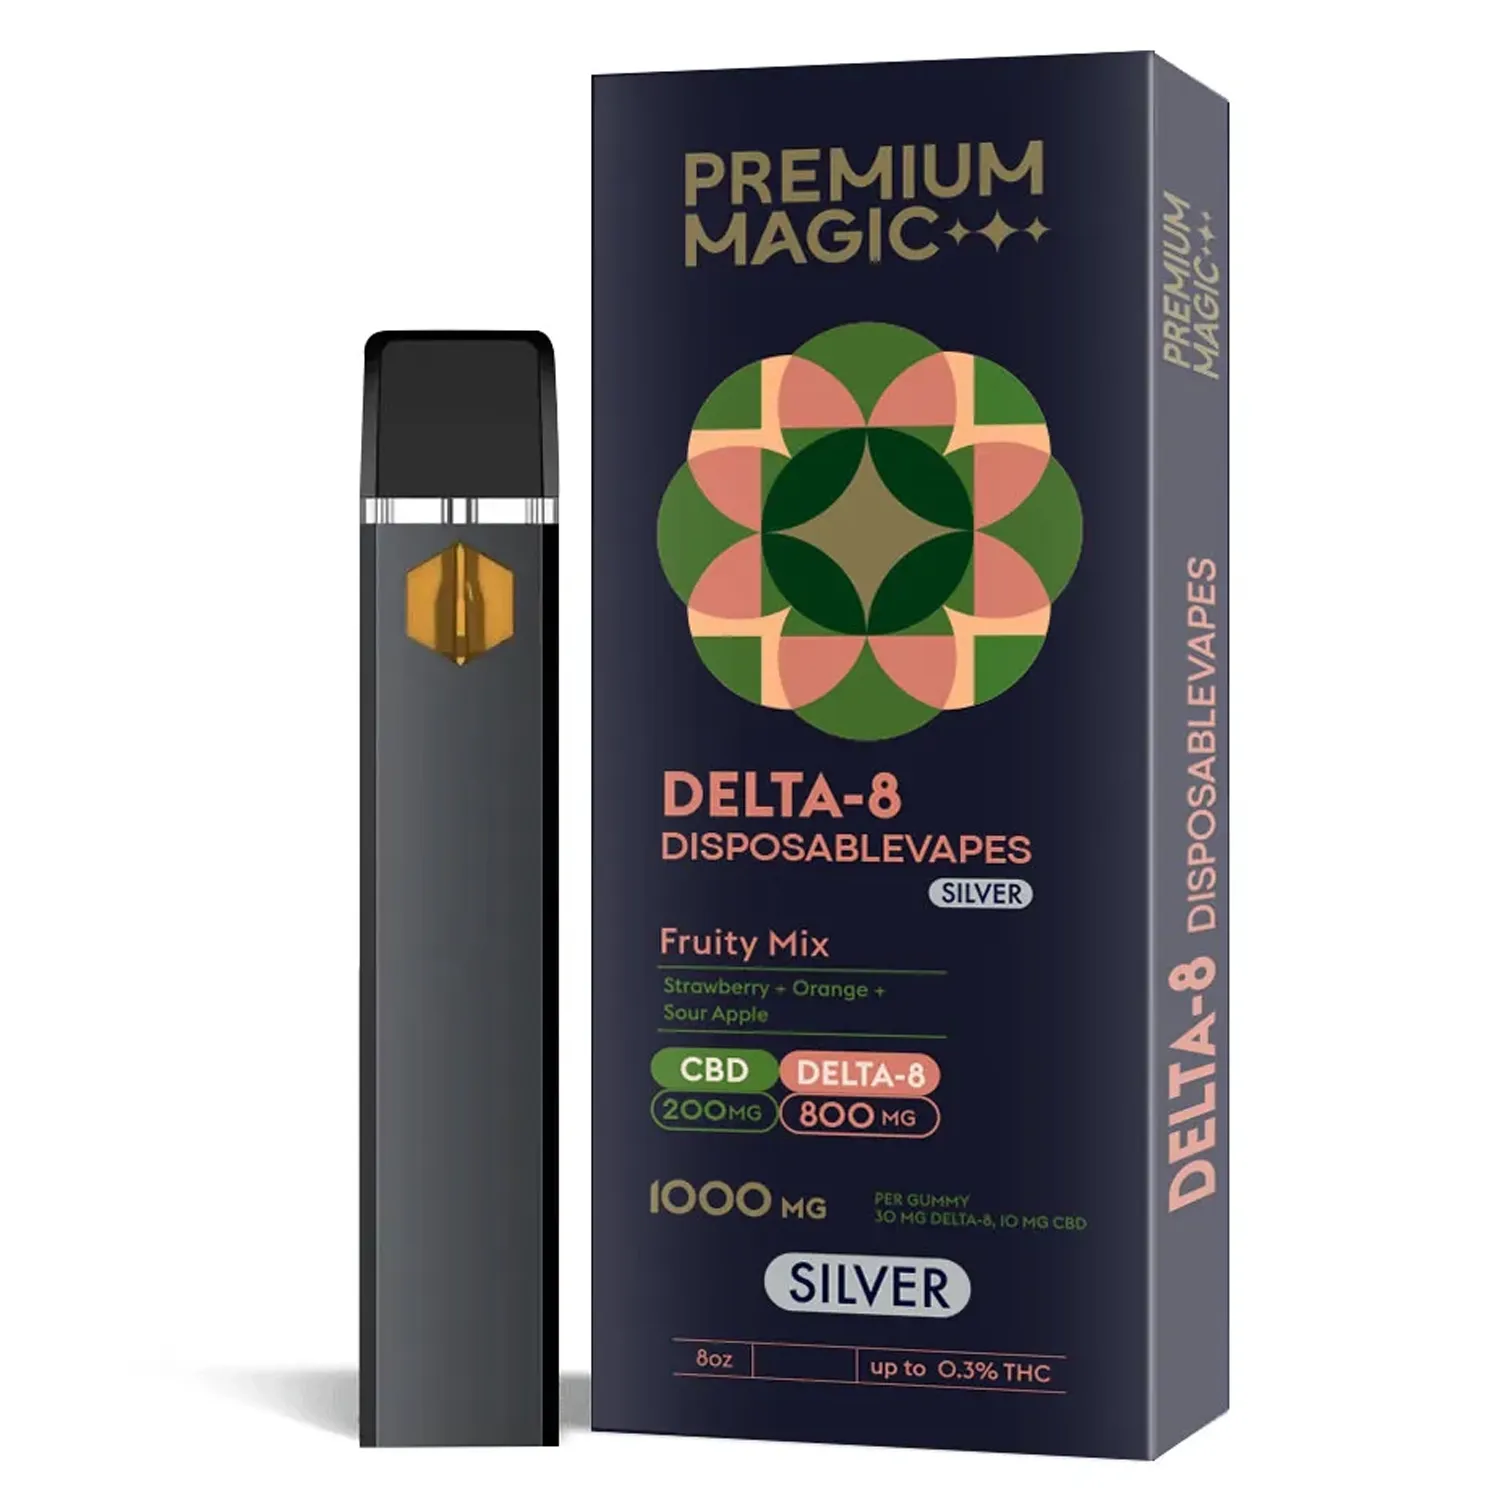 Delta-8 By Premium Magic cbd-The Definitive Delta-8 Comprehensive Review